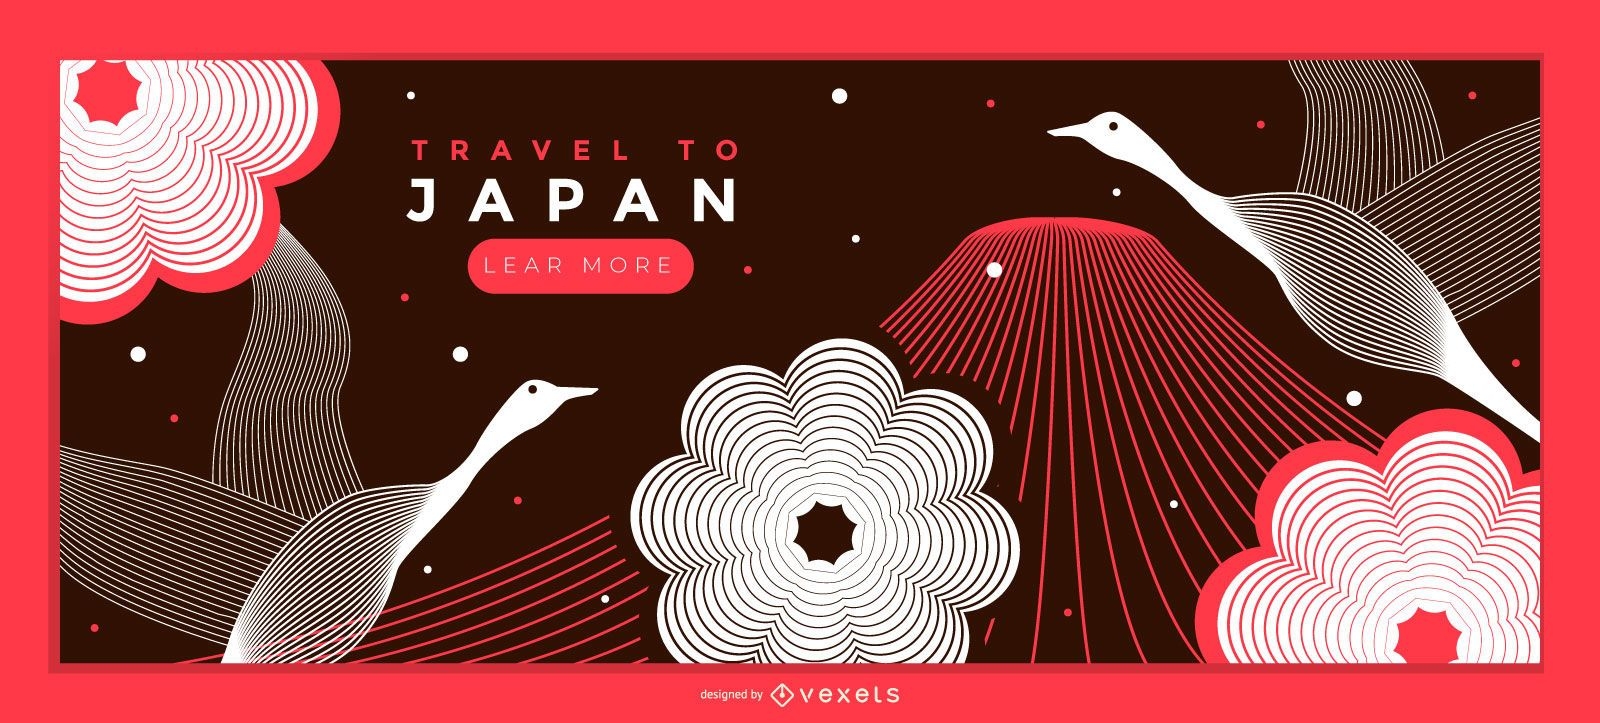 Design da página de destino da Travel Japan